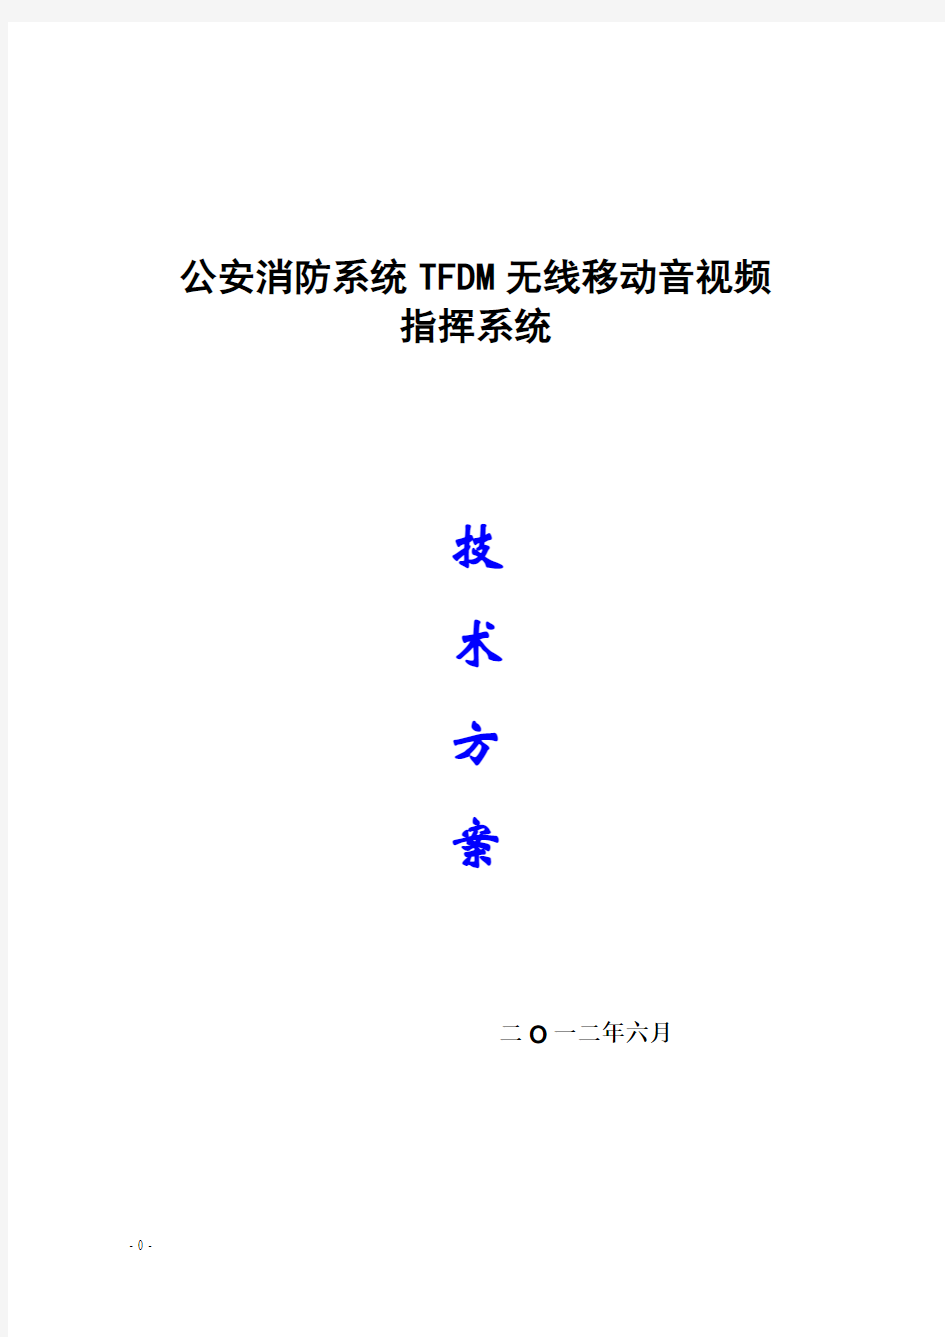 TFDM窄带高清图传方案